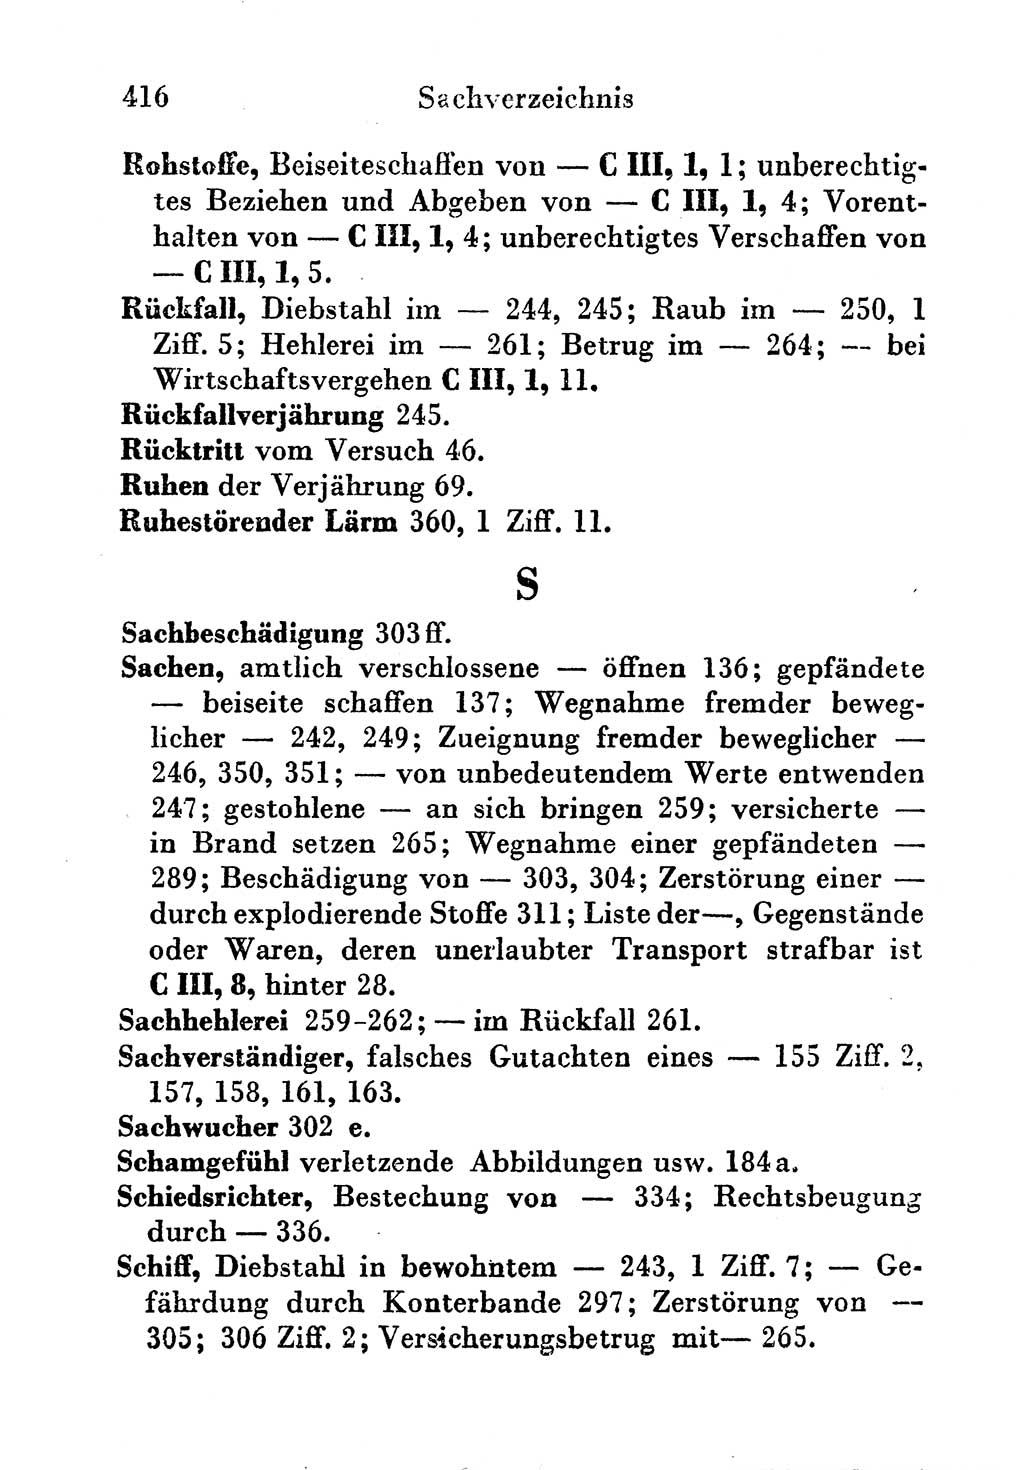 Strafgesetzbuch (StGB) und andere Strafgesetze [Deutsche Demokratische Republik (DDR)] 1956, Seite 416 (StGB Strafges. DDR 1956, S. 416)